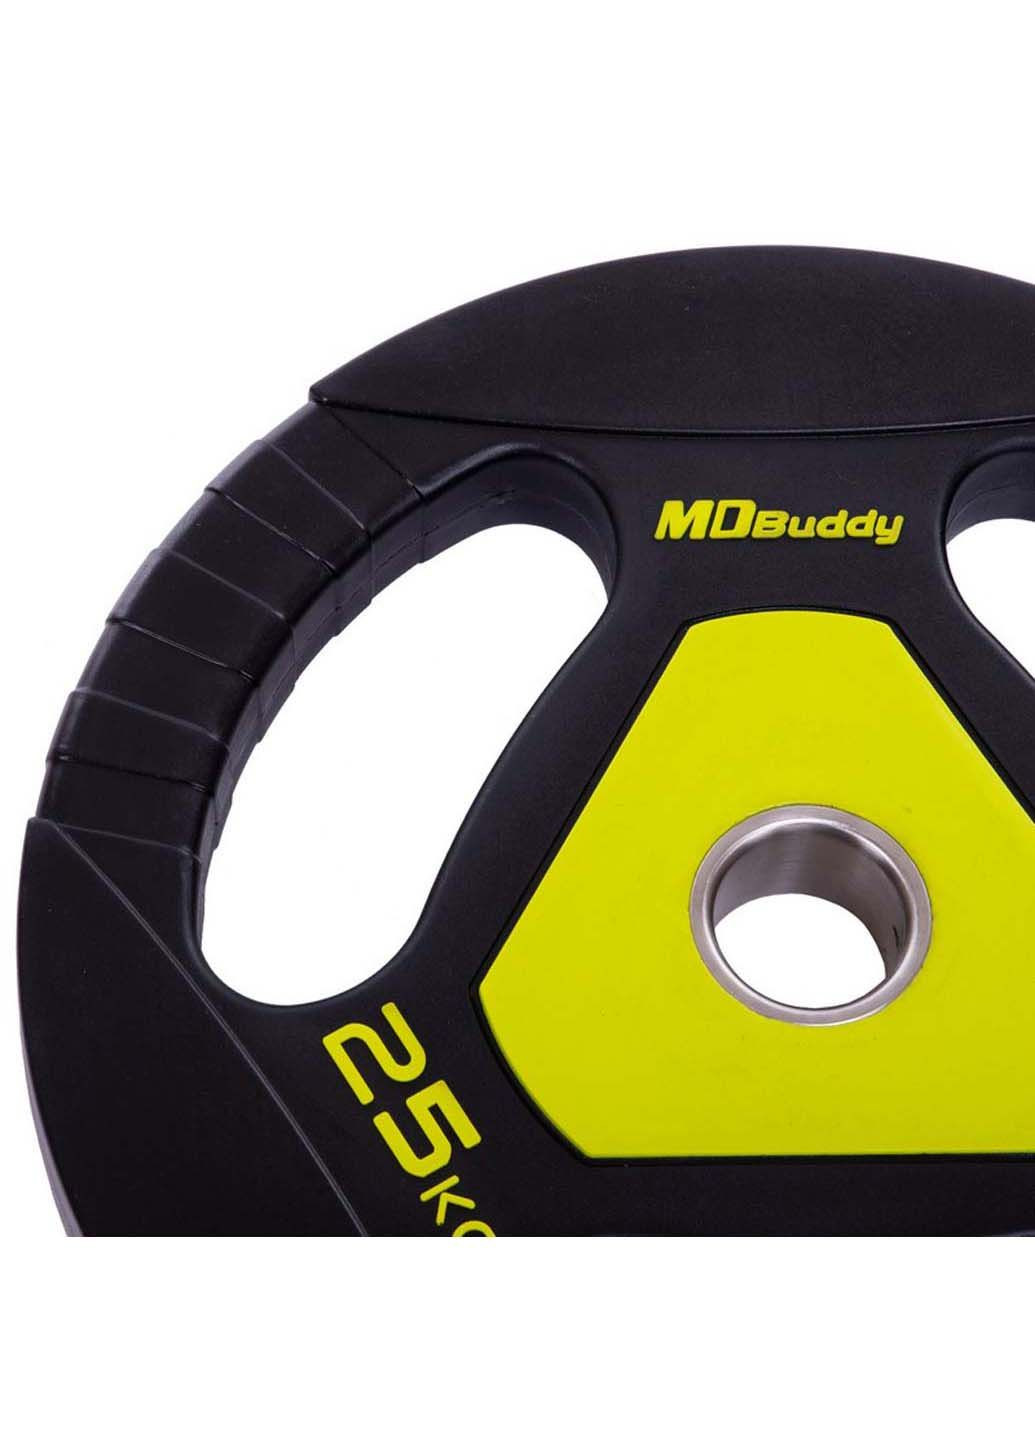 Млинці диски поліуретанові TA-2677 25 кг MDbuddy (286043687)